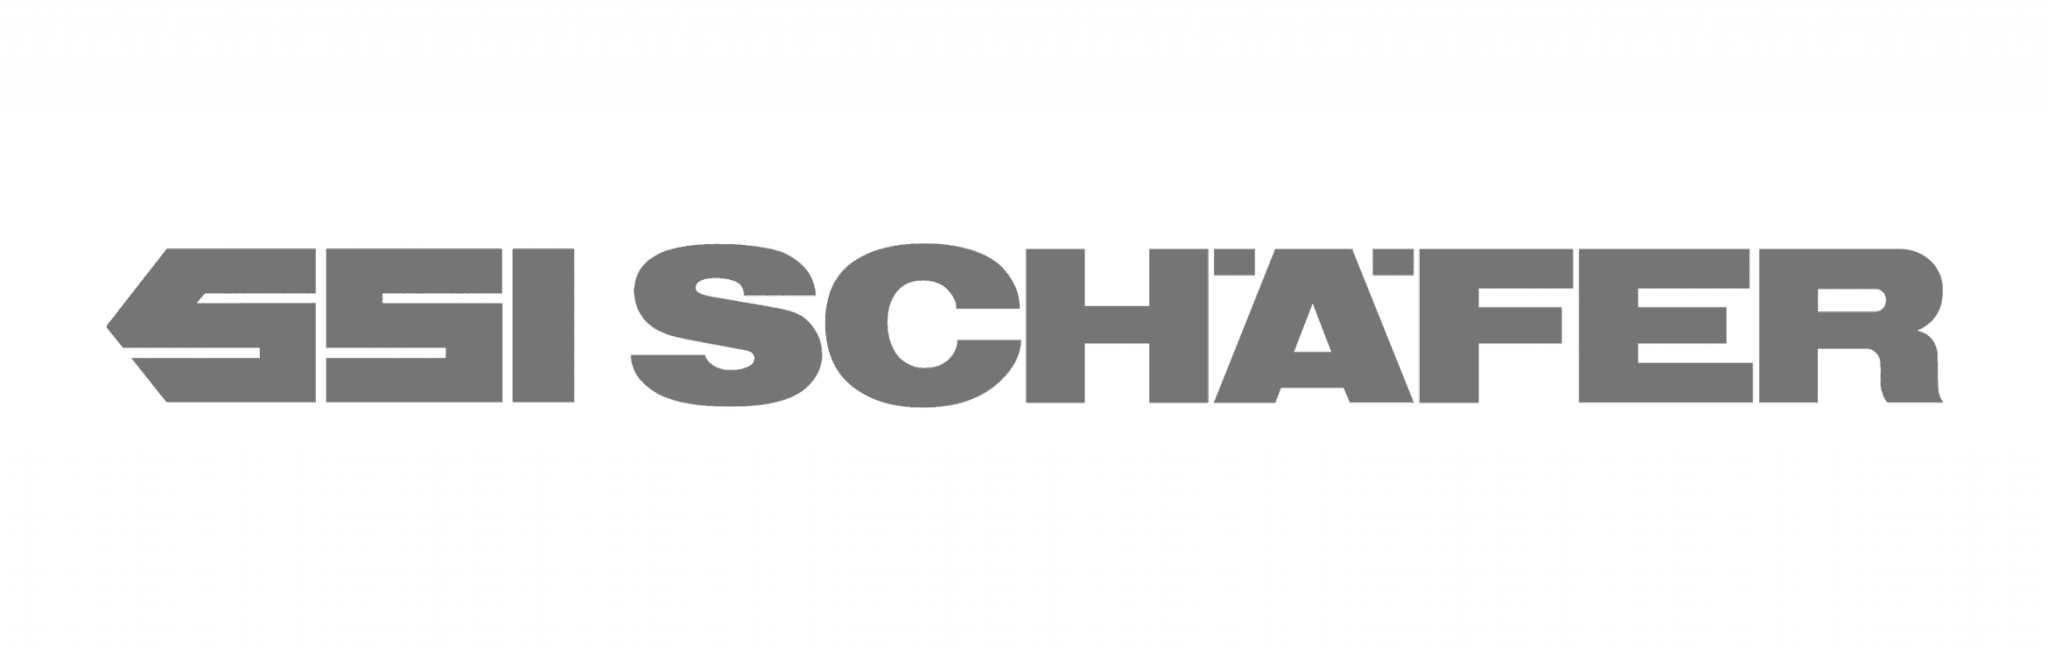 Schafer logo